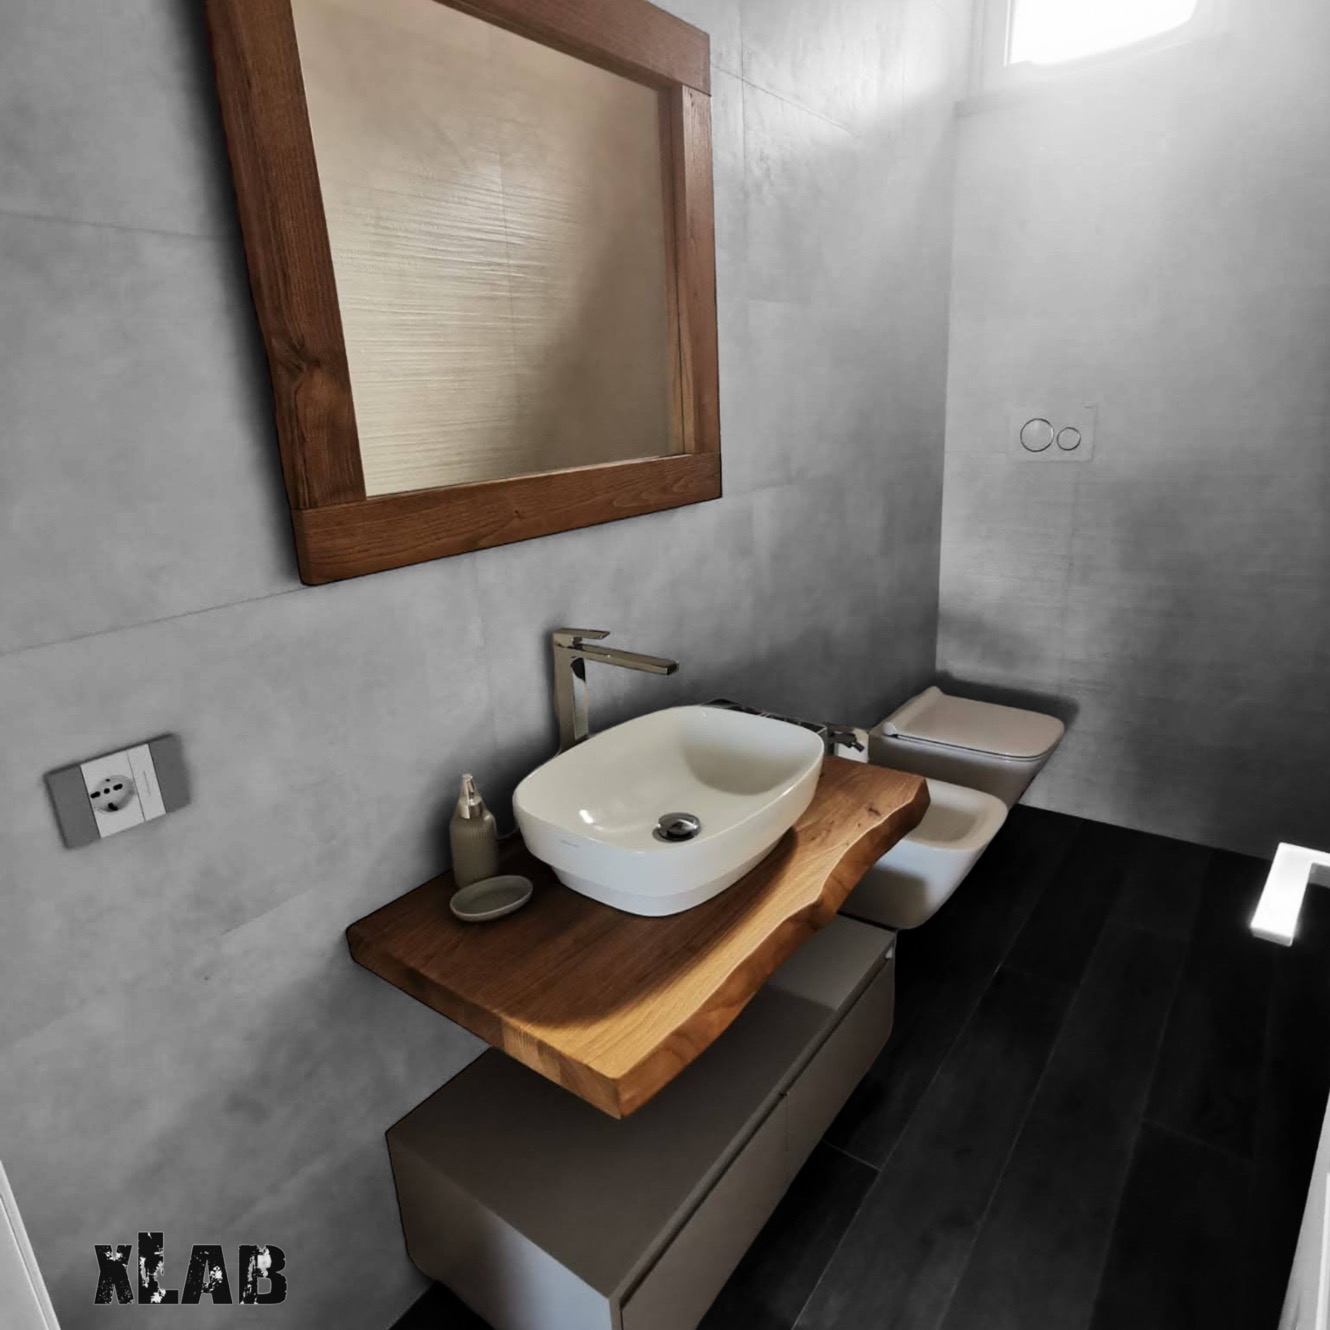 Mobile da bagno mensola sospesa in legno massello cassetto sospeso laccato  grigio tortora e specchio - XLAB Design